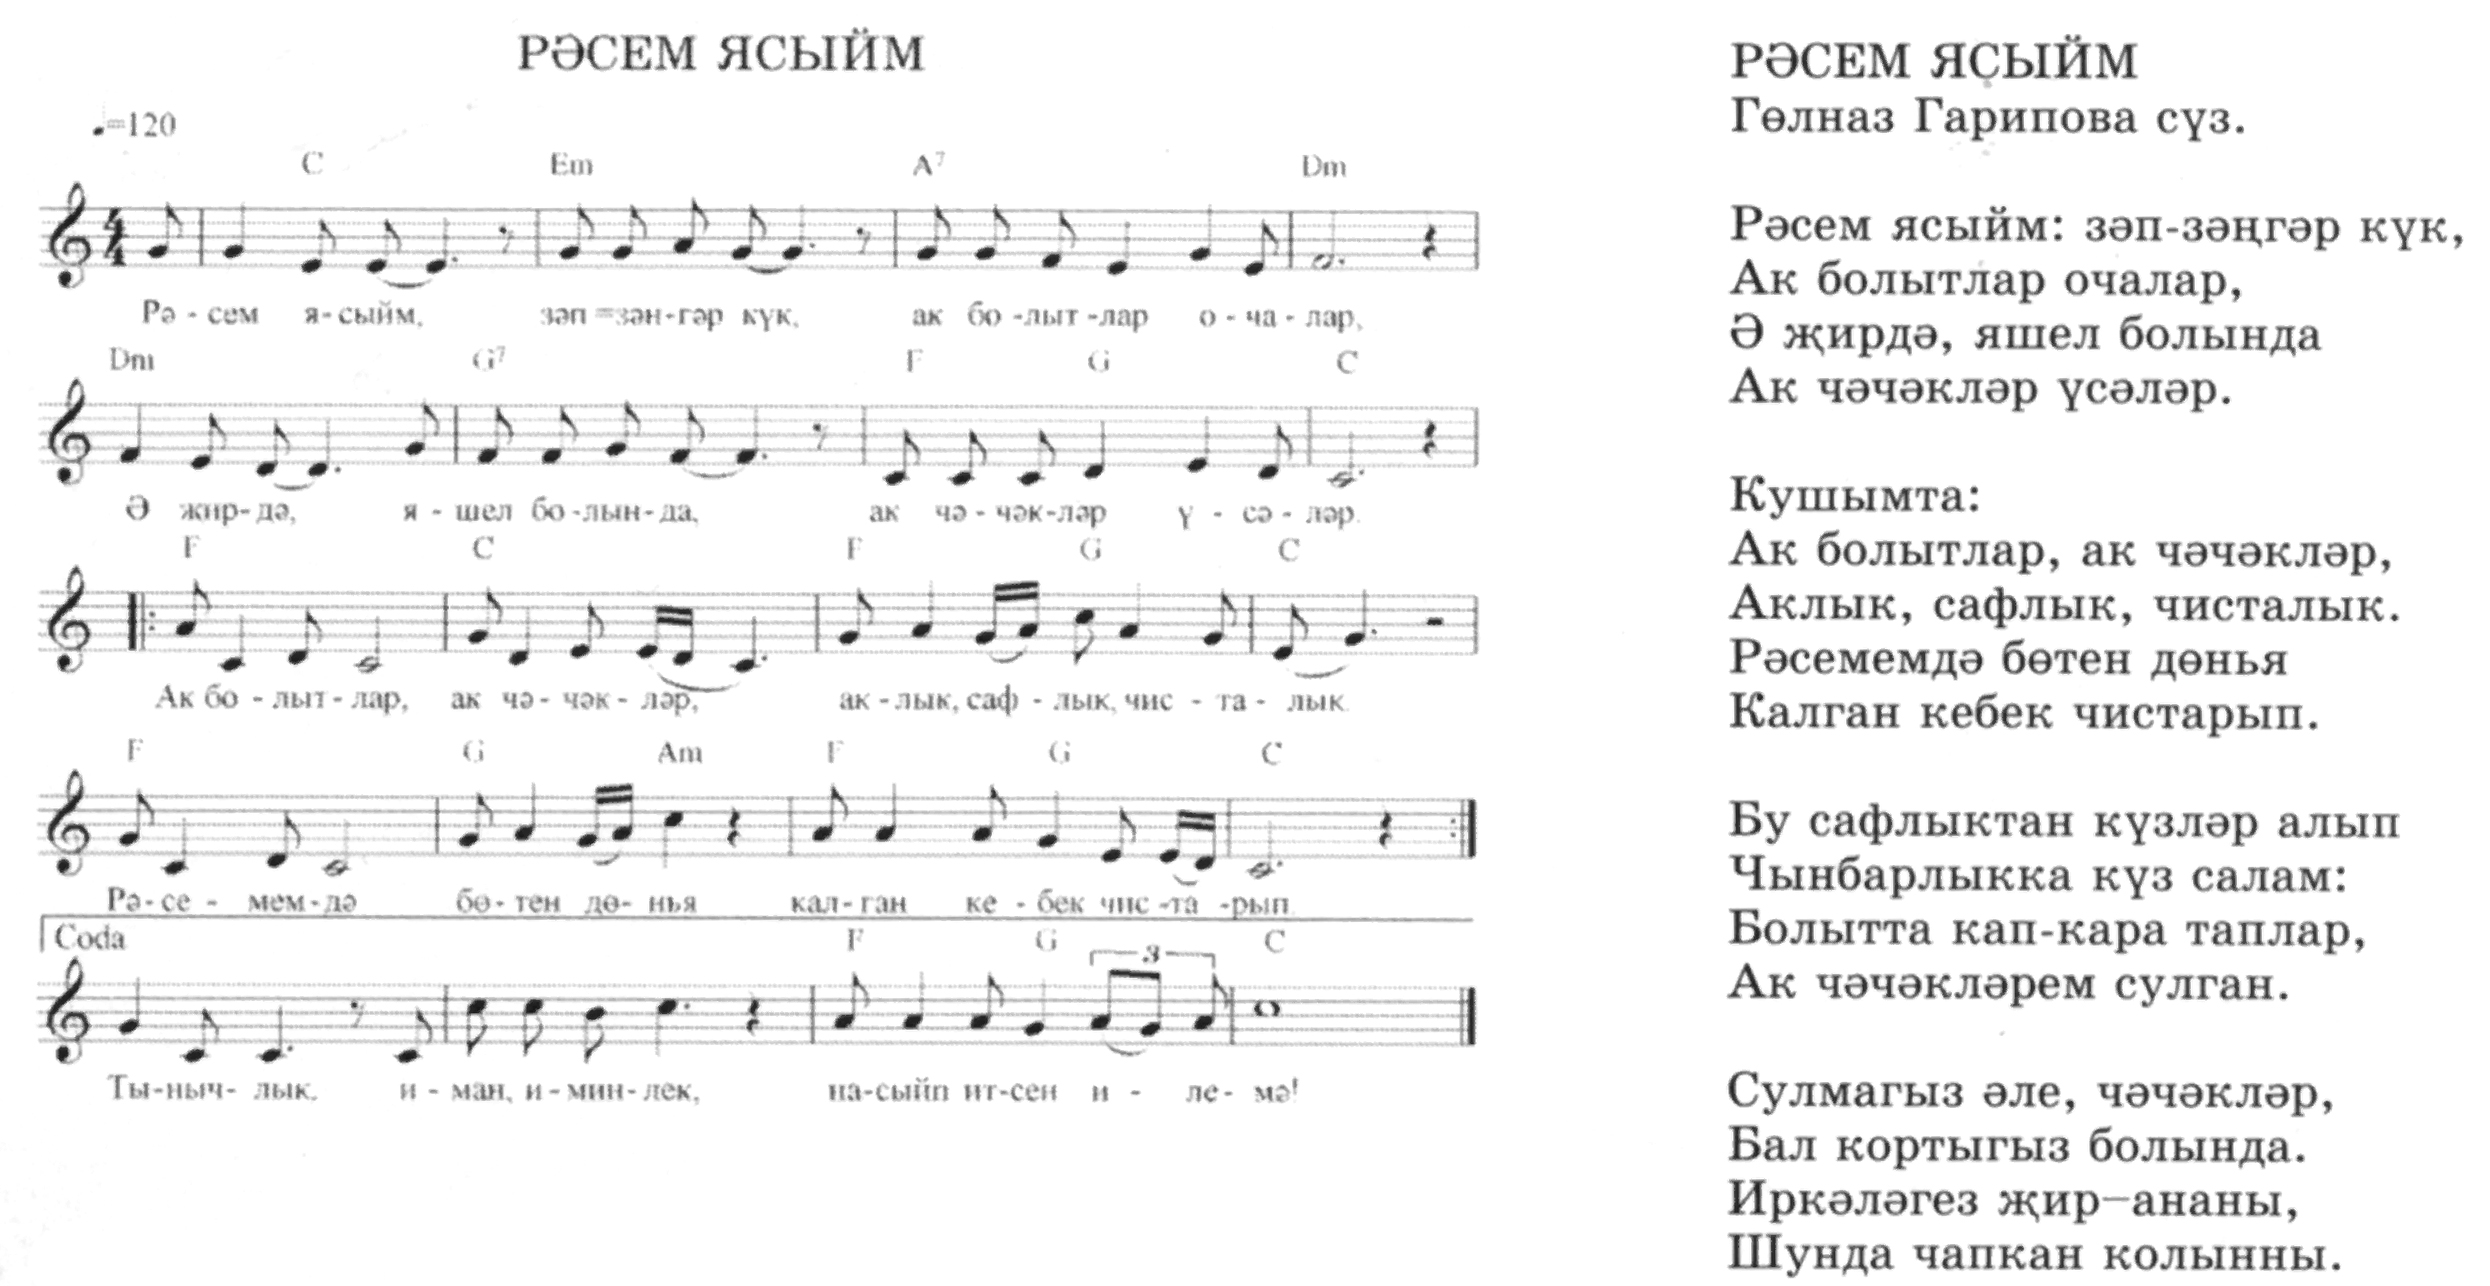 Методическое пособие Татарское народное музыкальное творчество